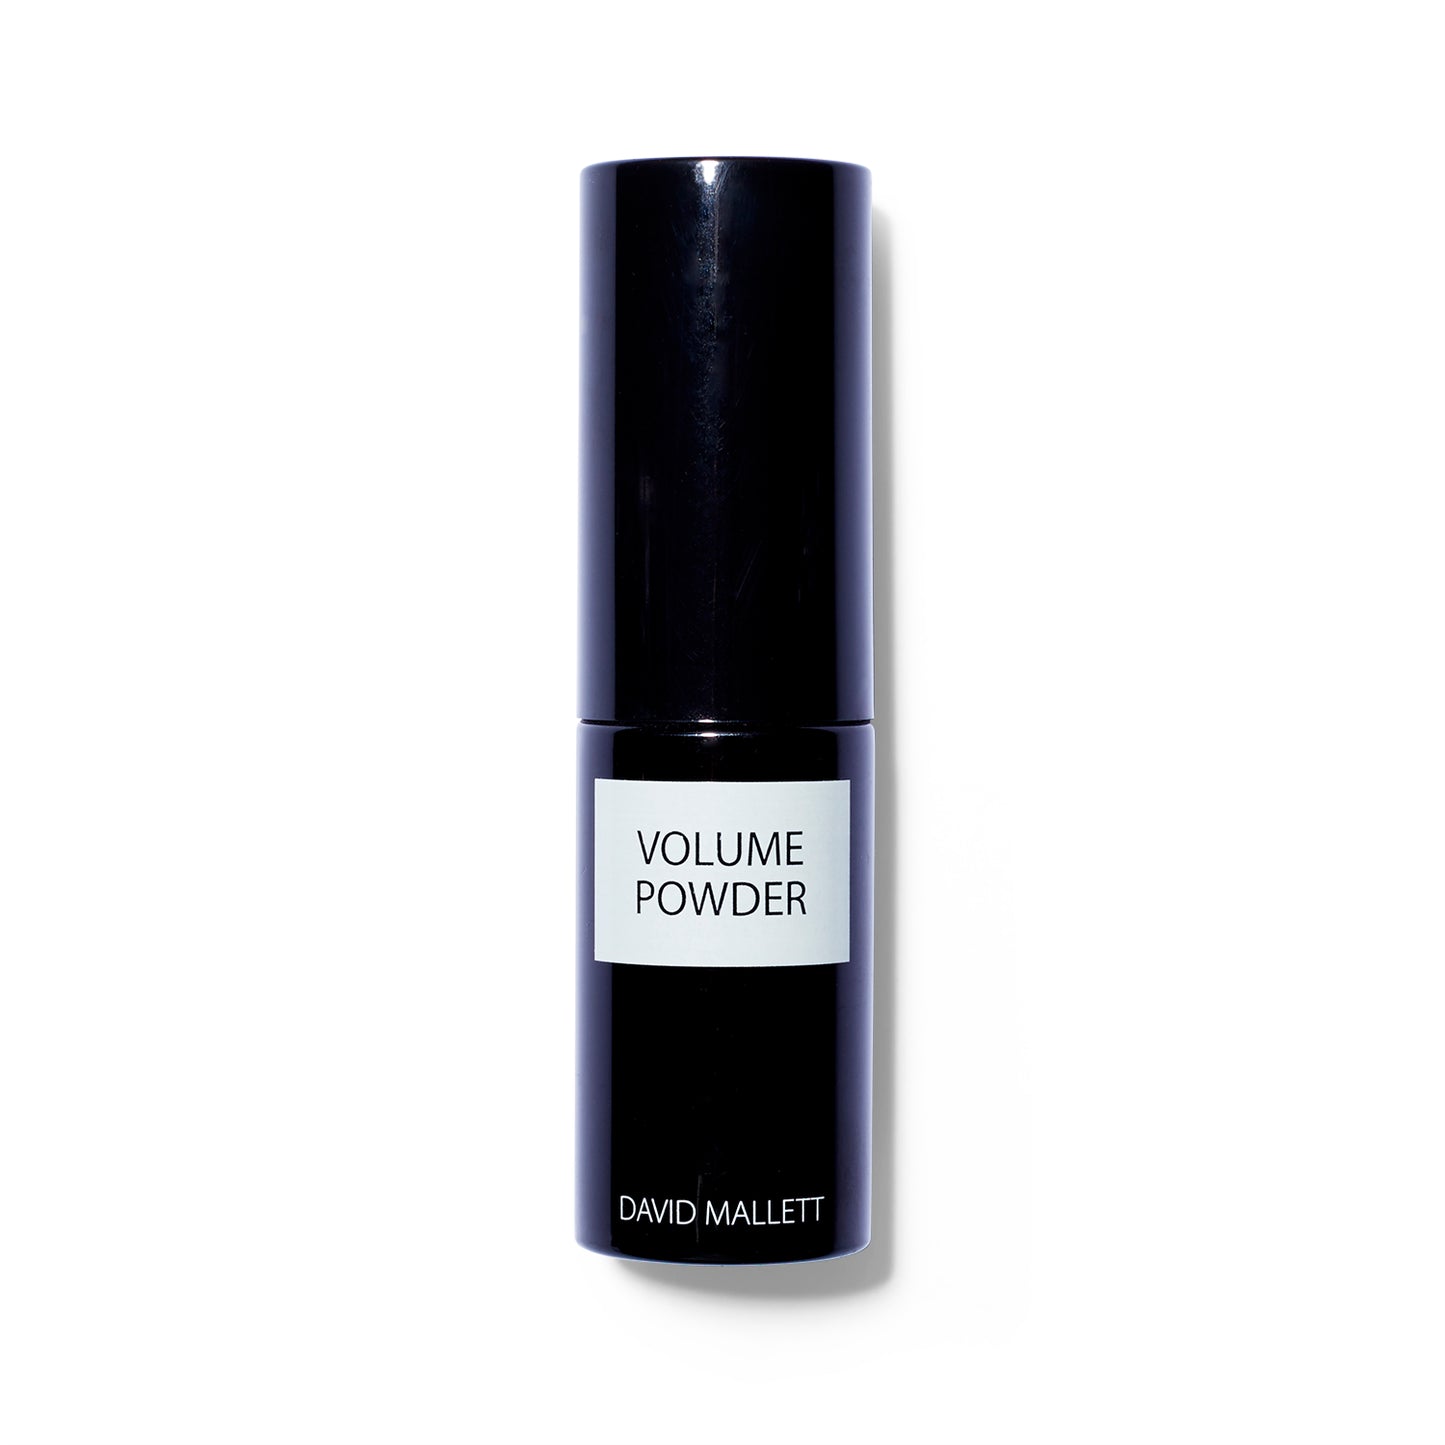 David Mallett Volume Powder. Packaging is a black cylinder.